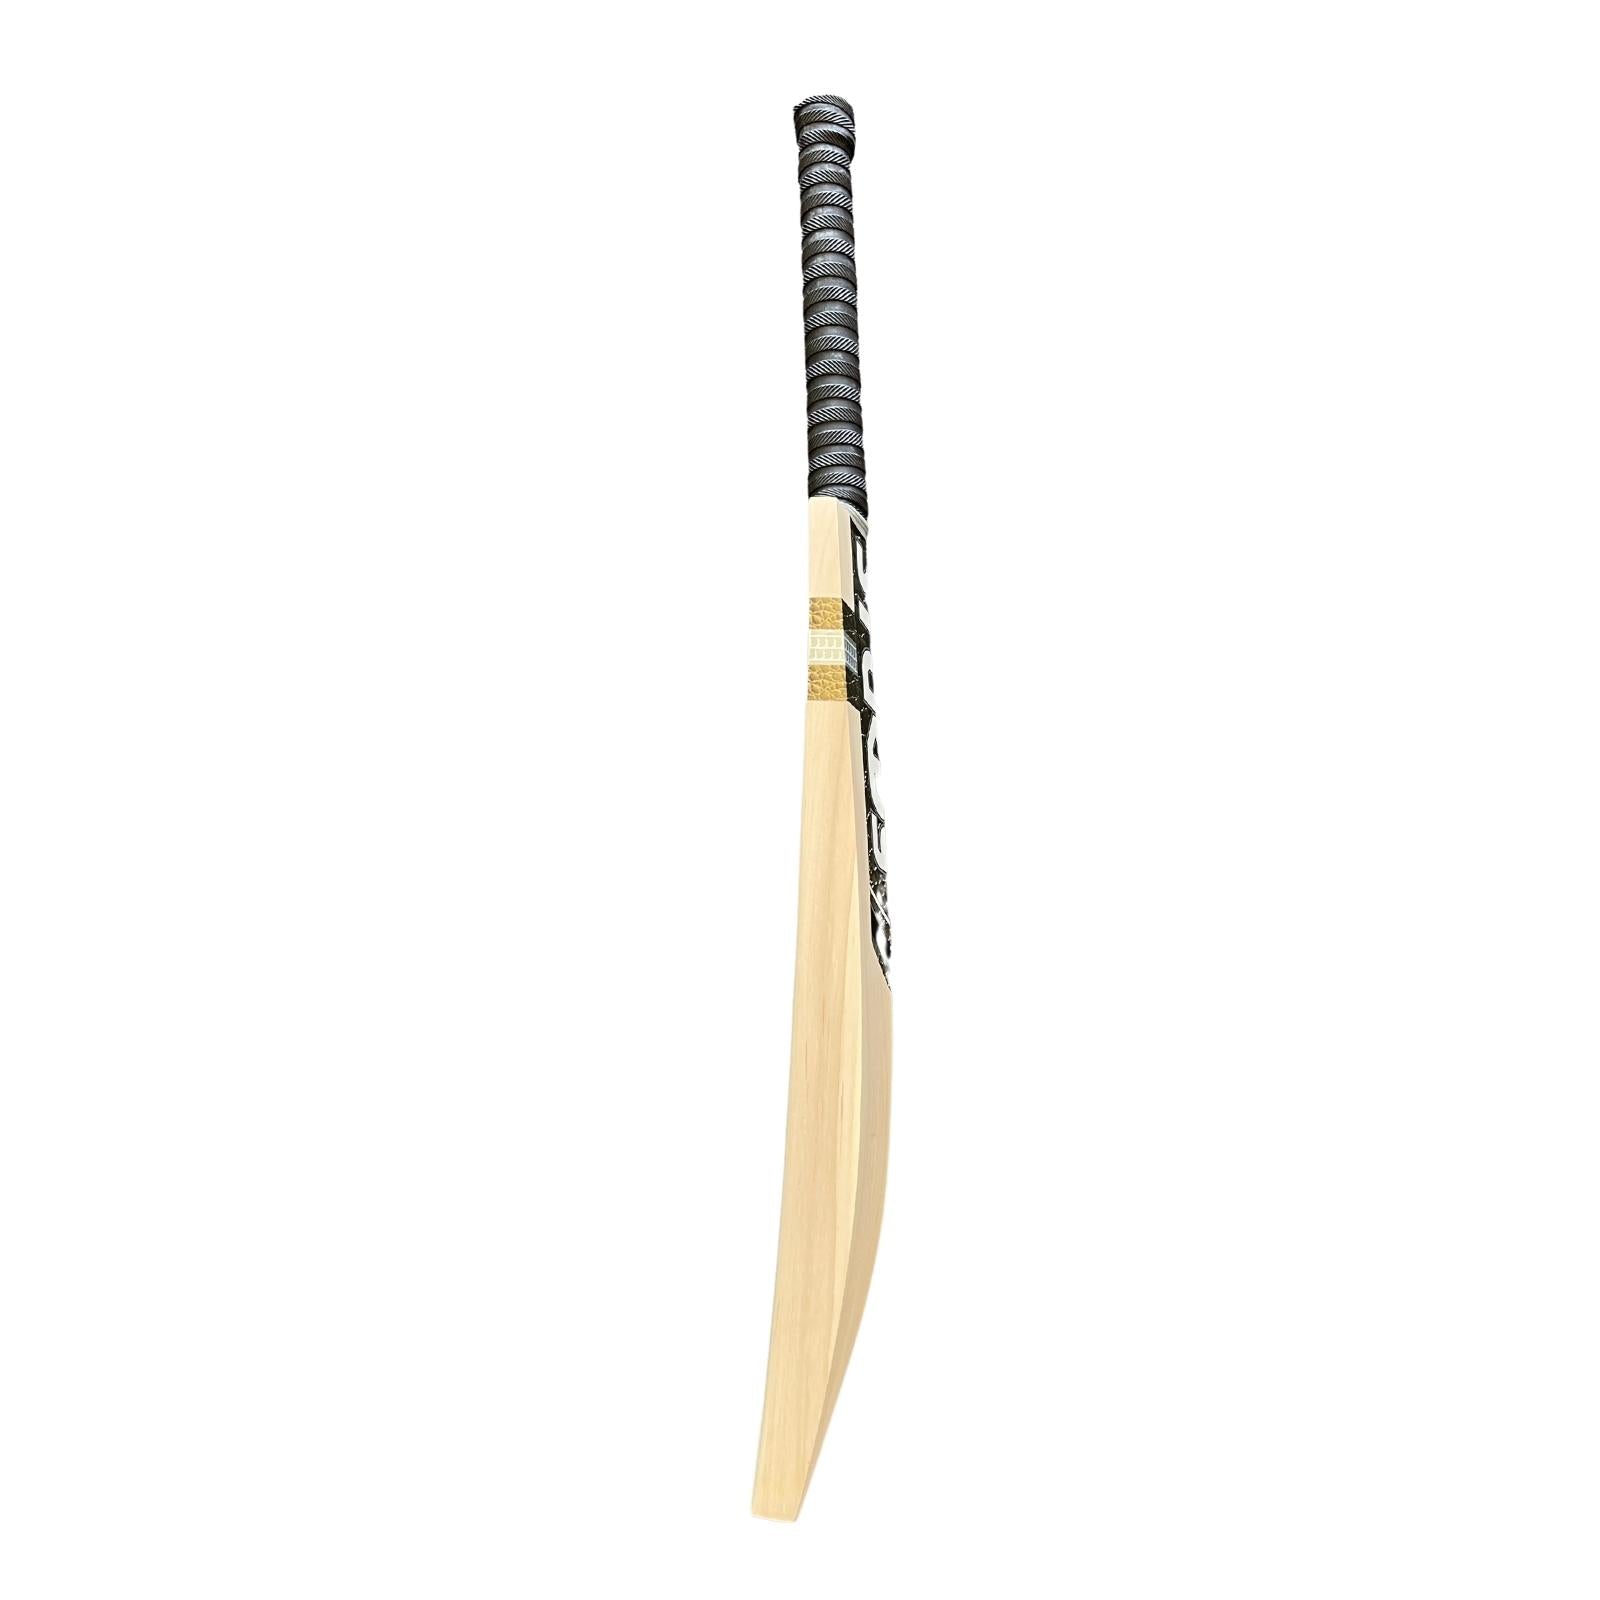 Sturdy Kashmir Willow Cricket Bat - Harrow